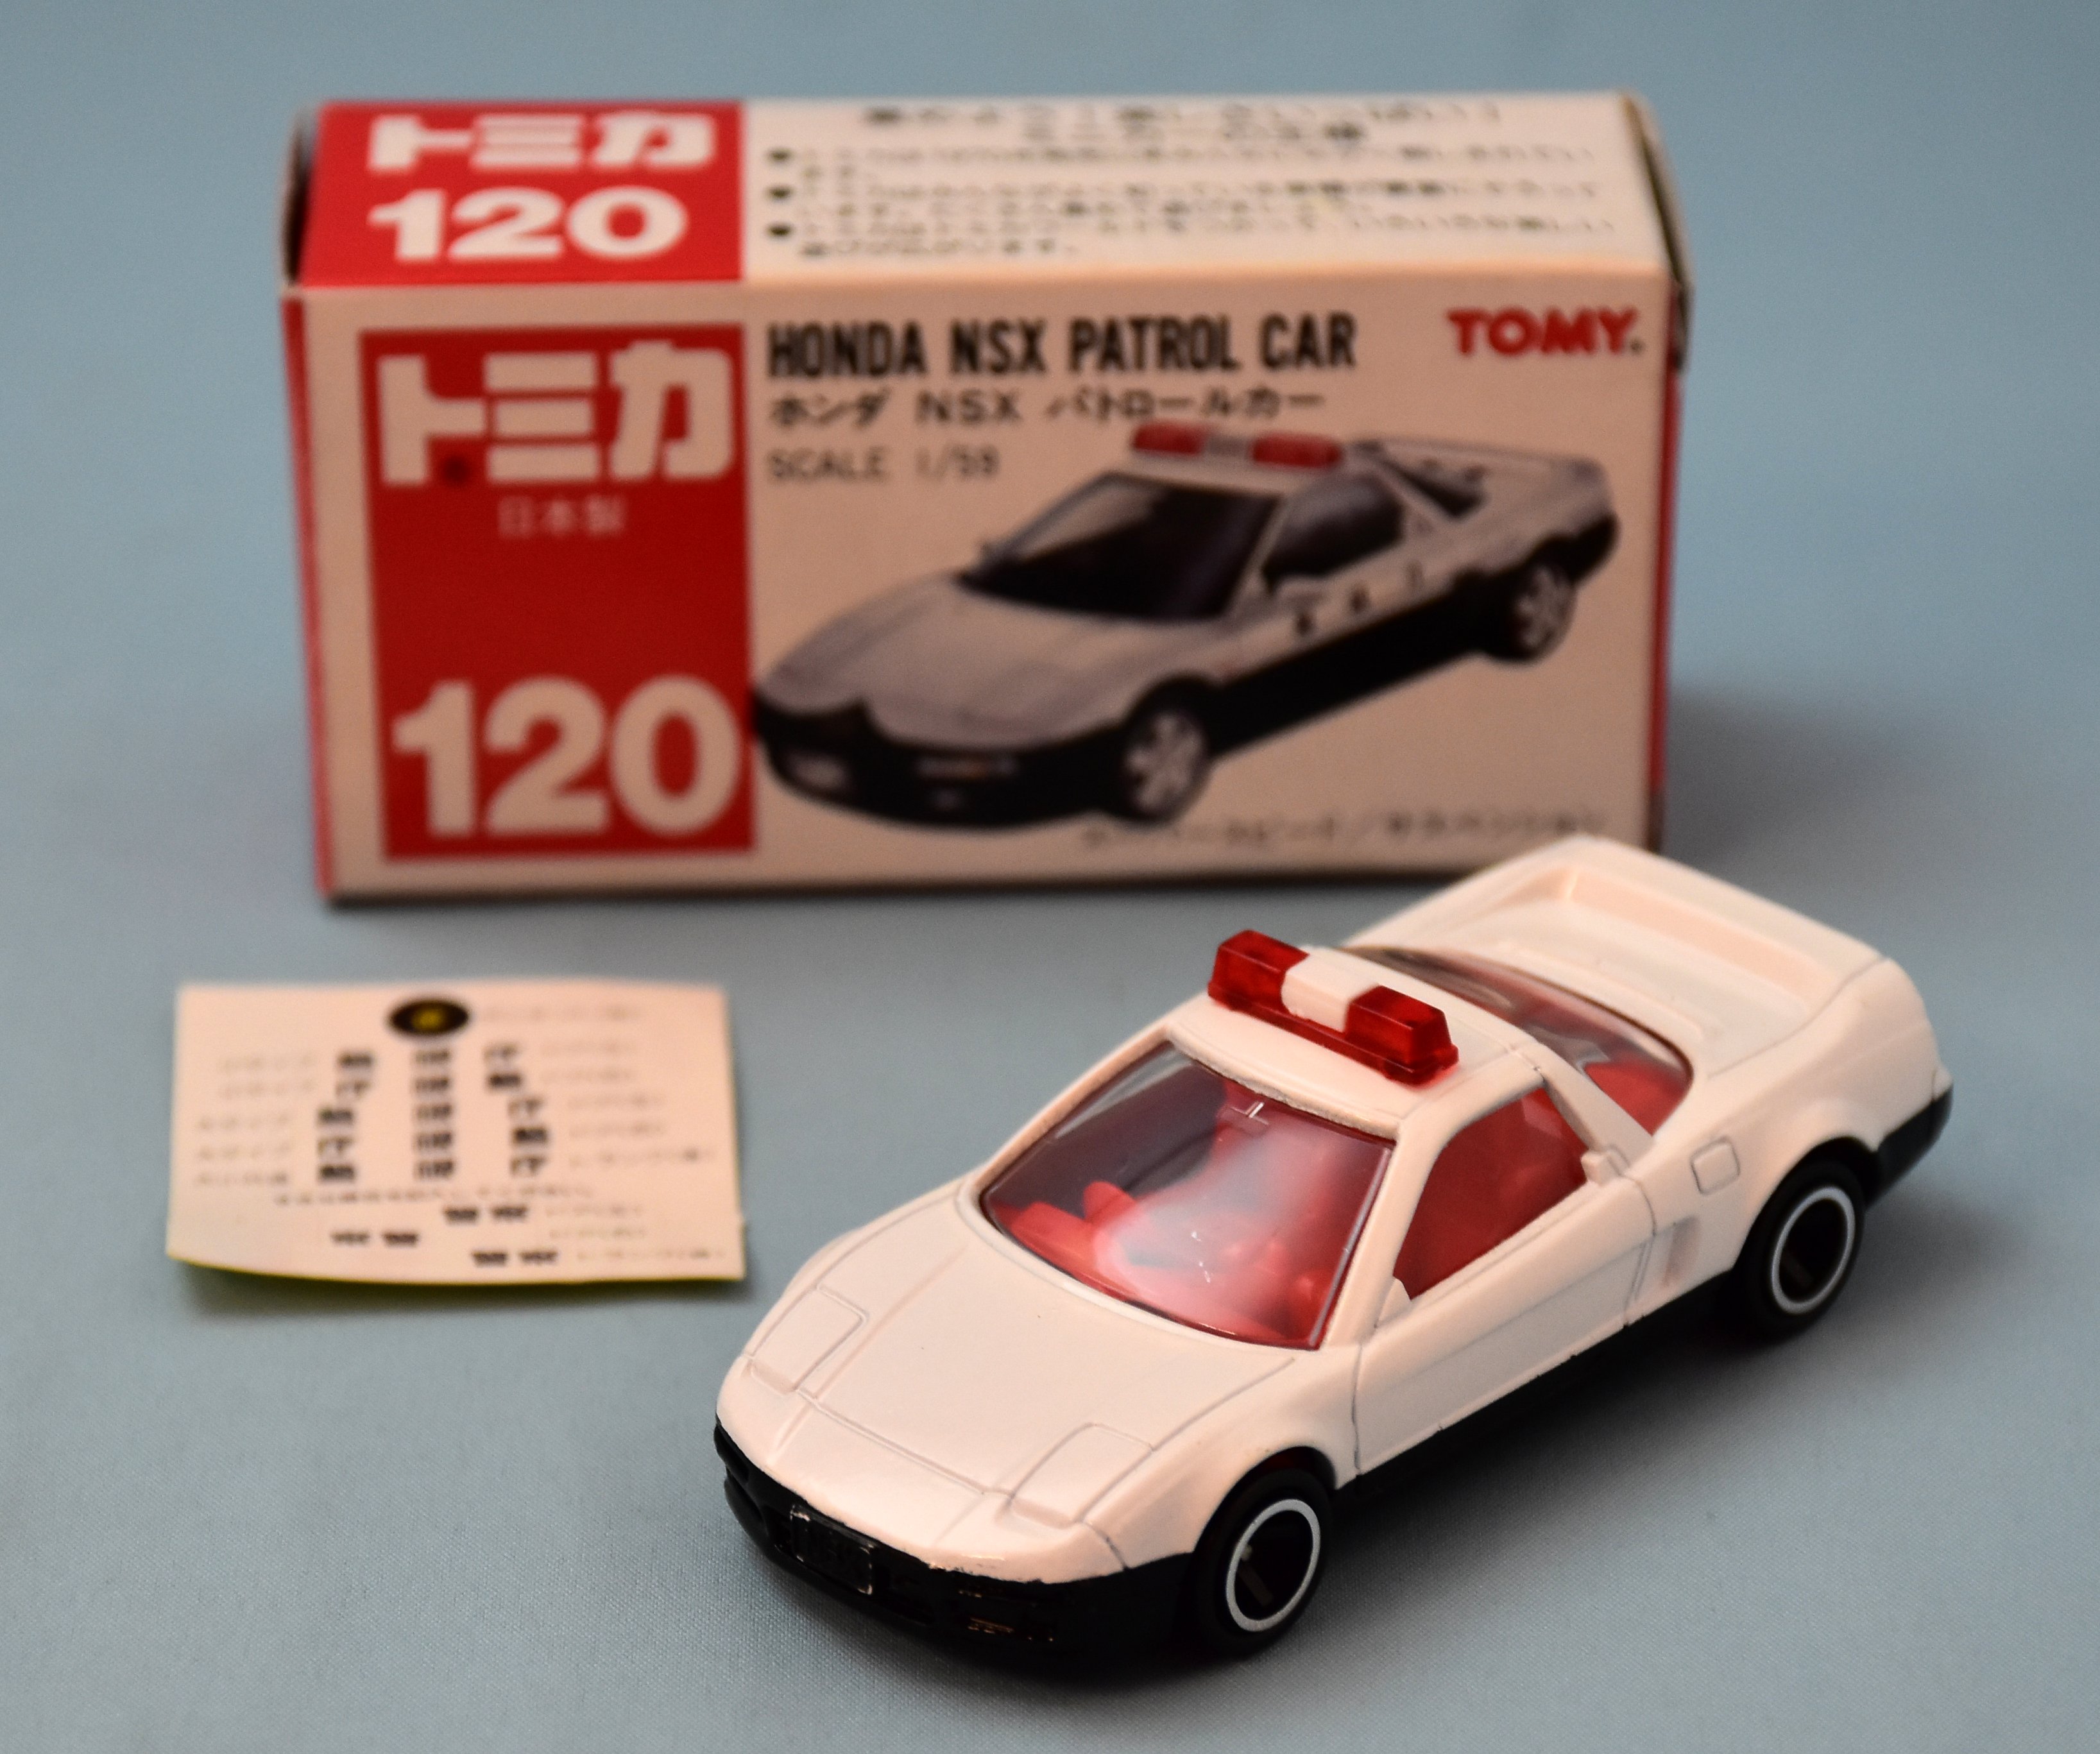 トミー トミカ赤箱日本製 ホンダ NSX パトロールカー 120-3-1 ...